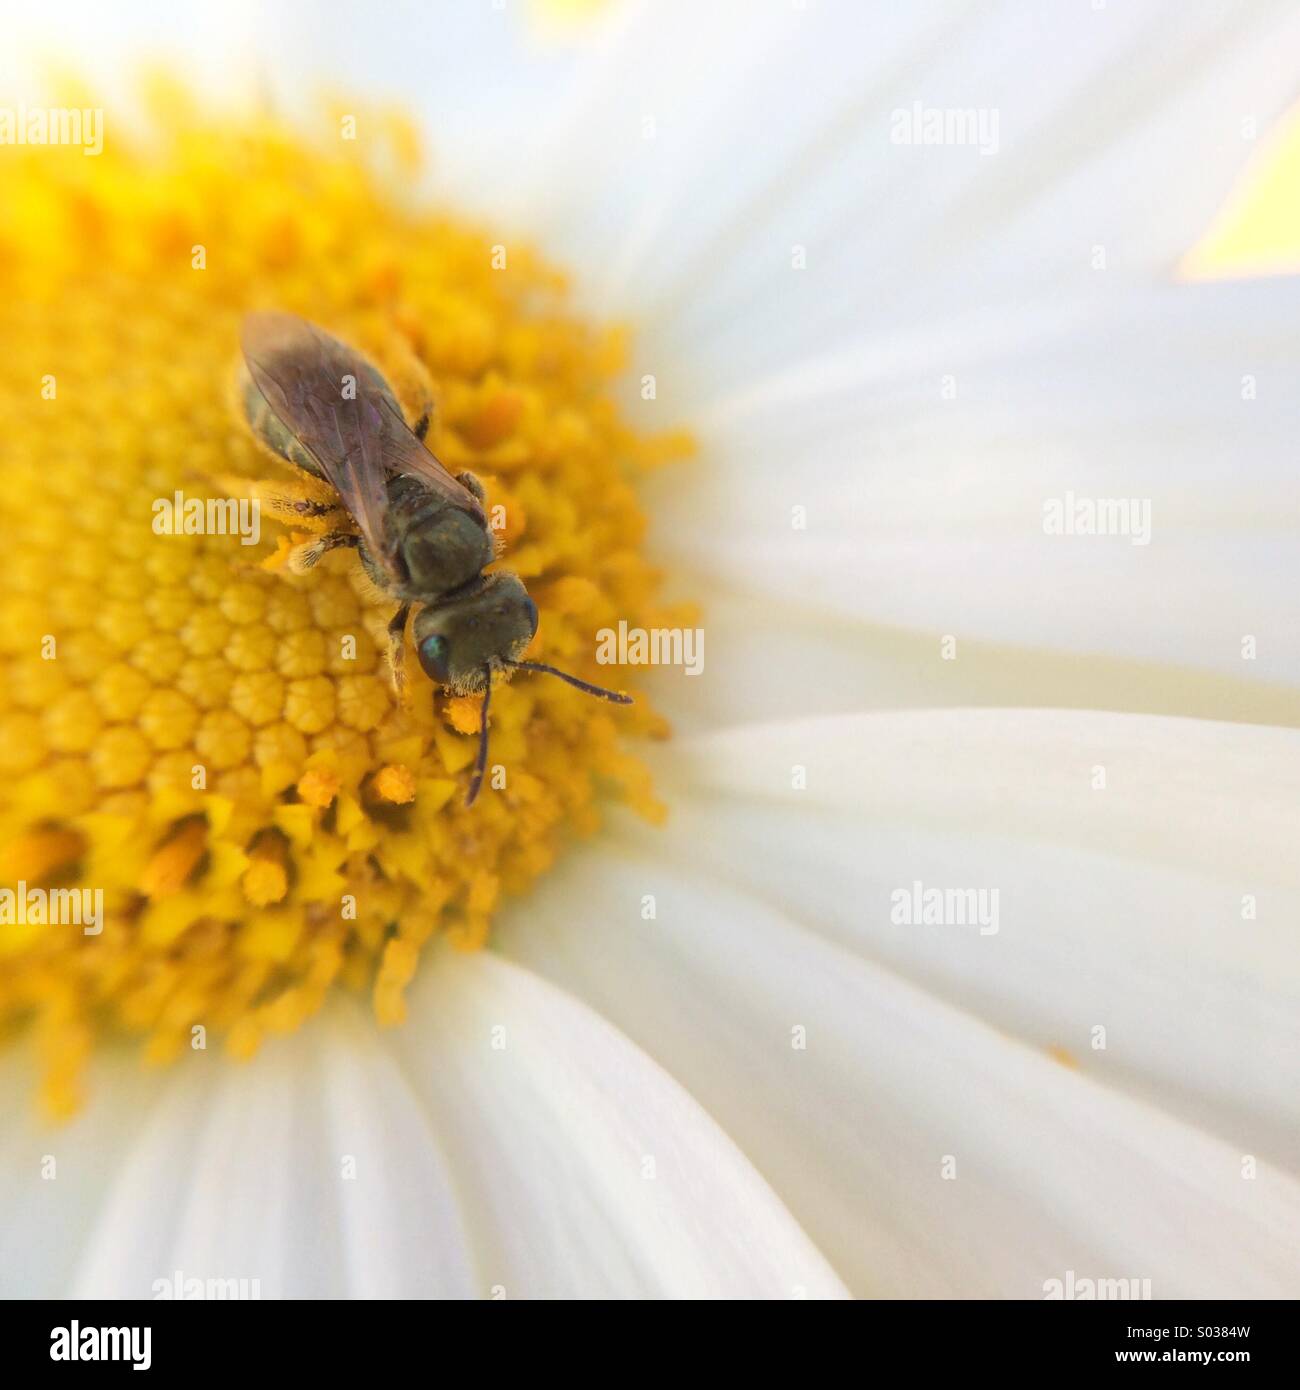 Macro of a bee on a daisy. Stock Photo